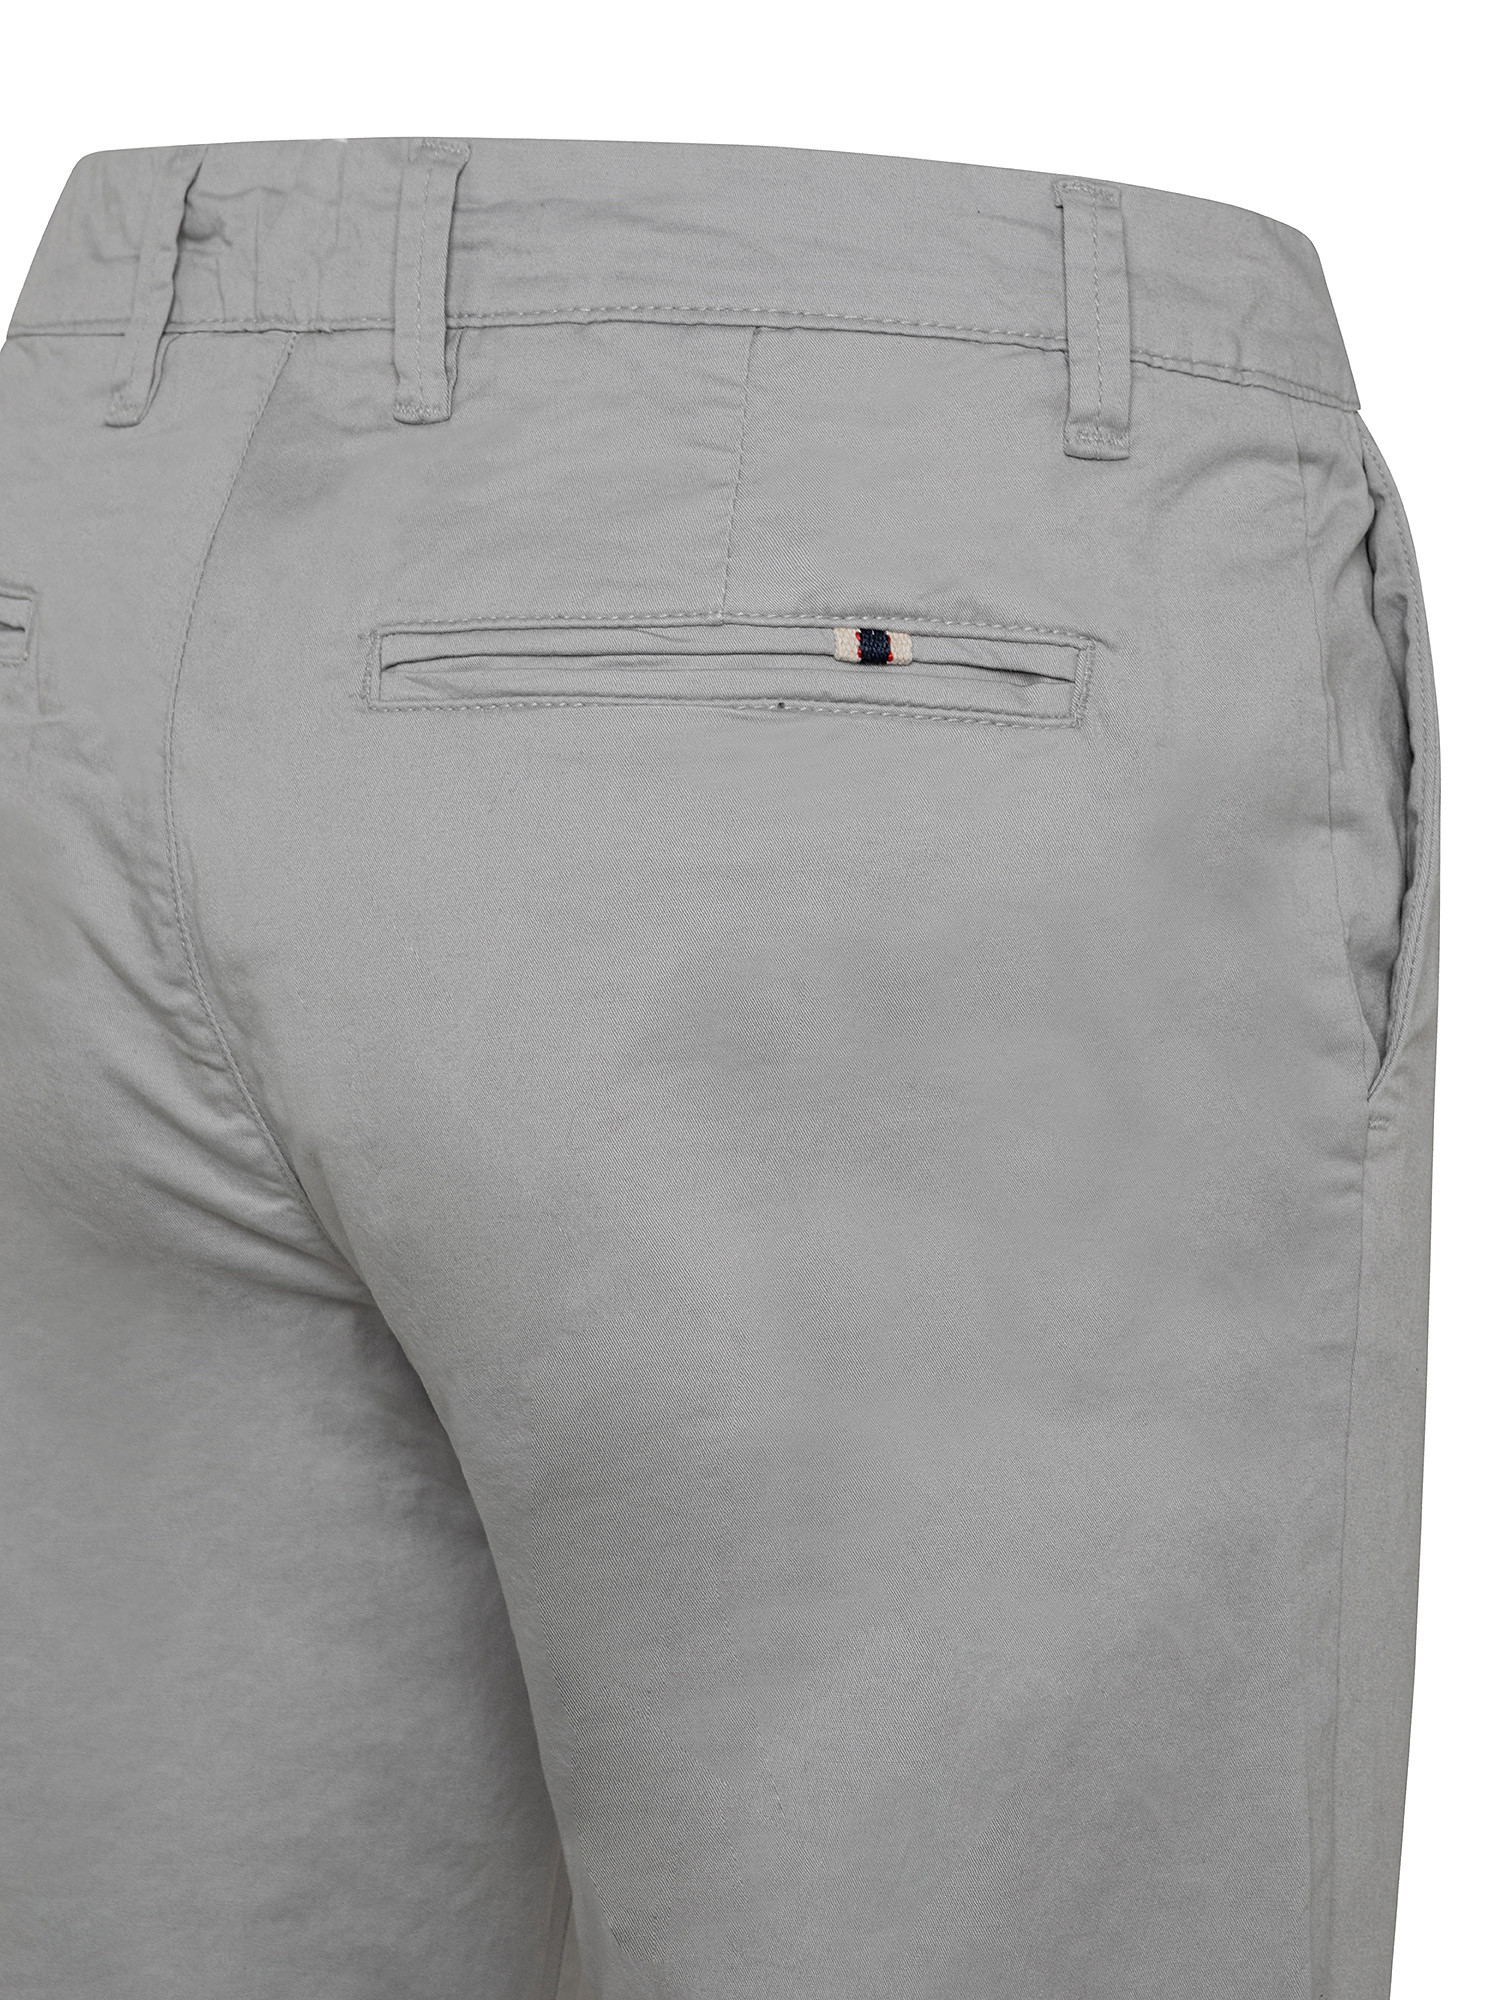 Pantalone chinos cotone stretch, Grigio, large